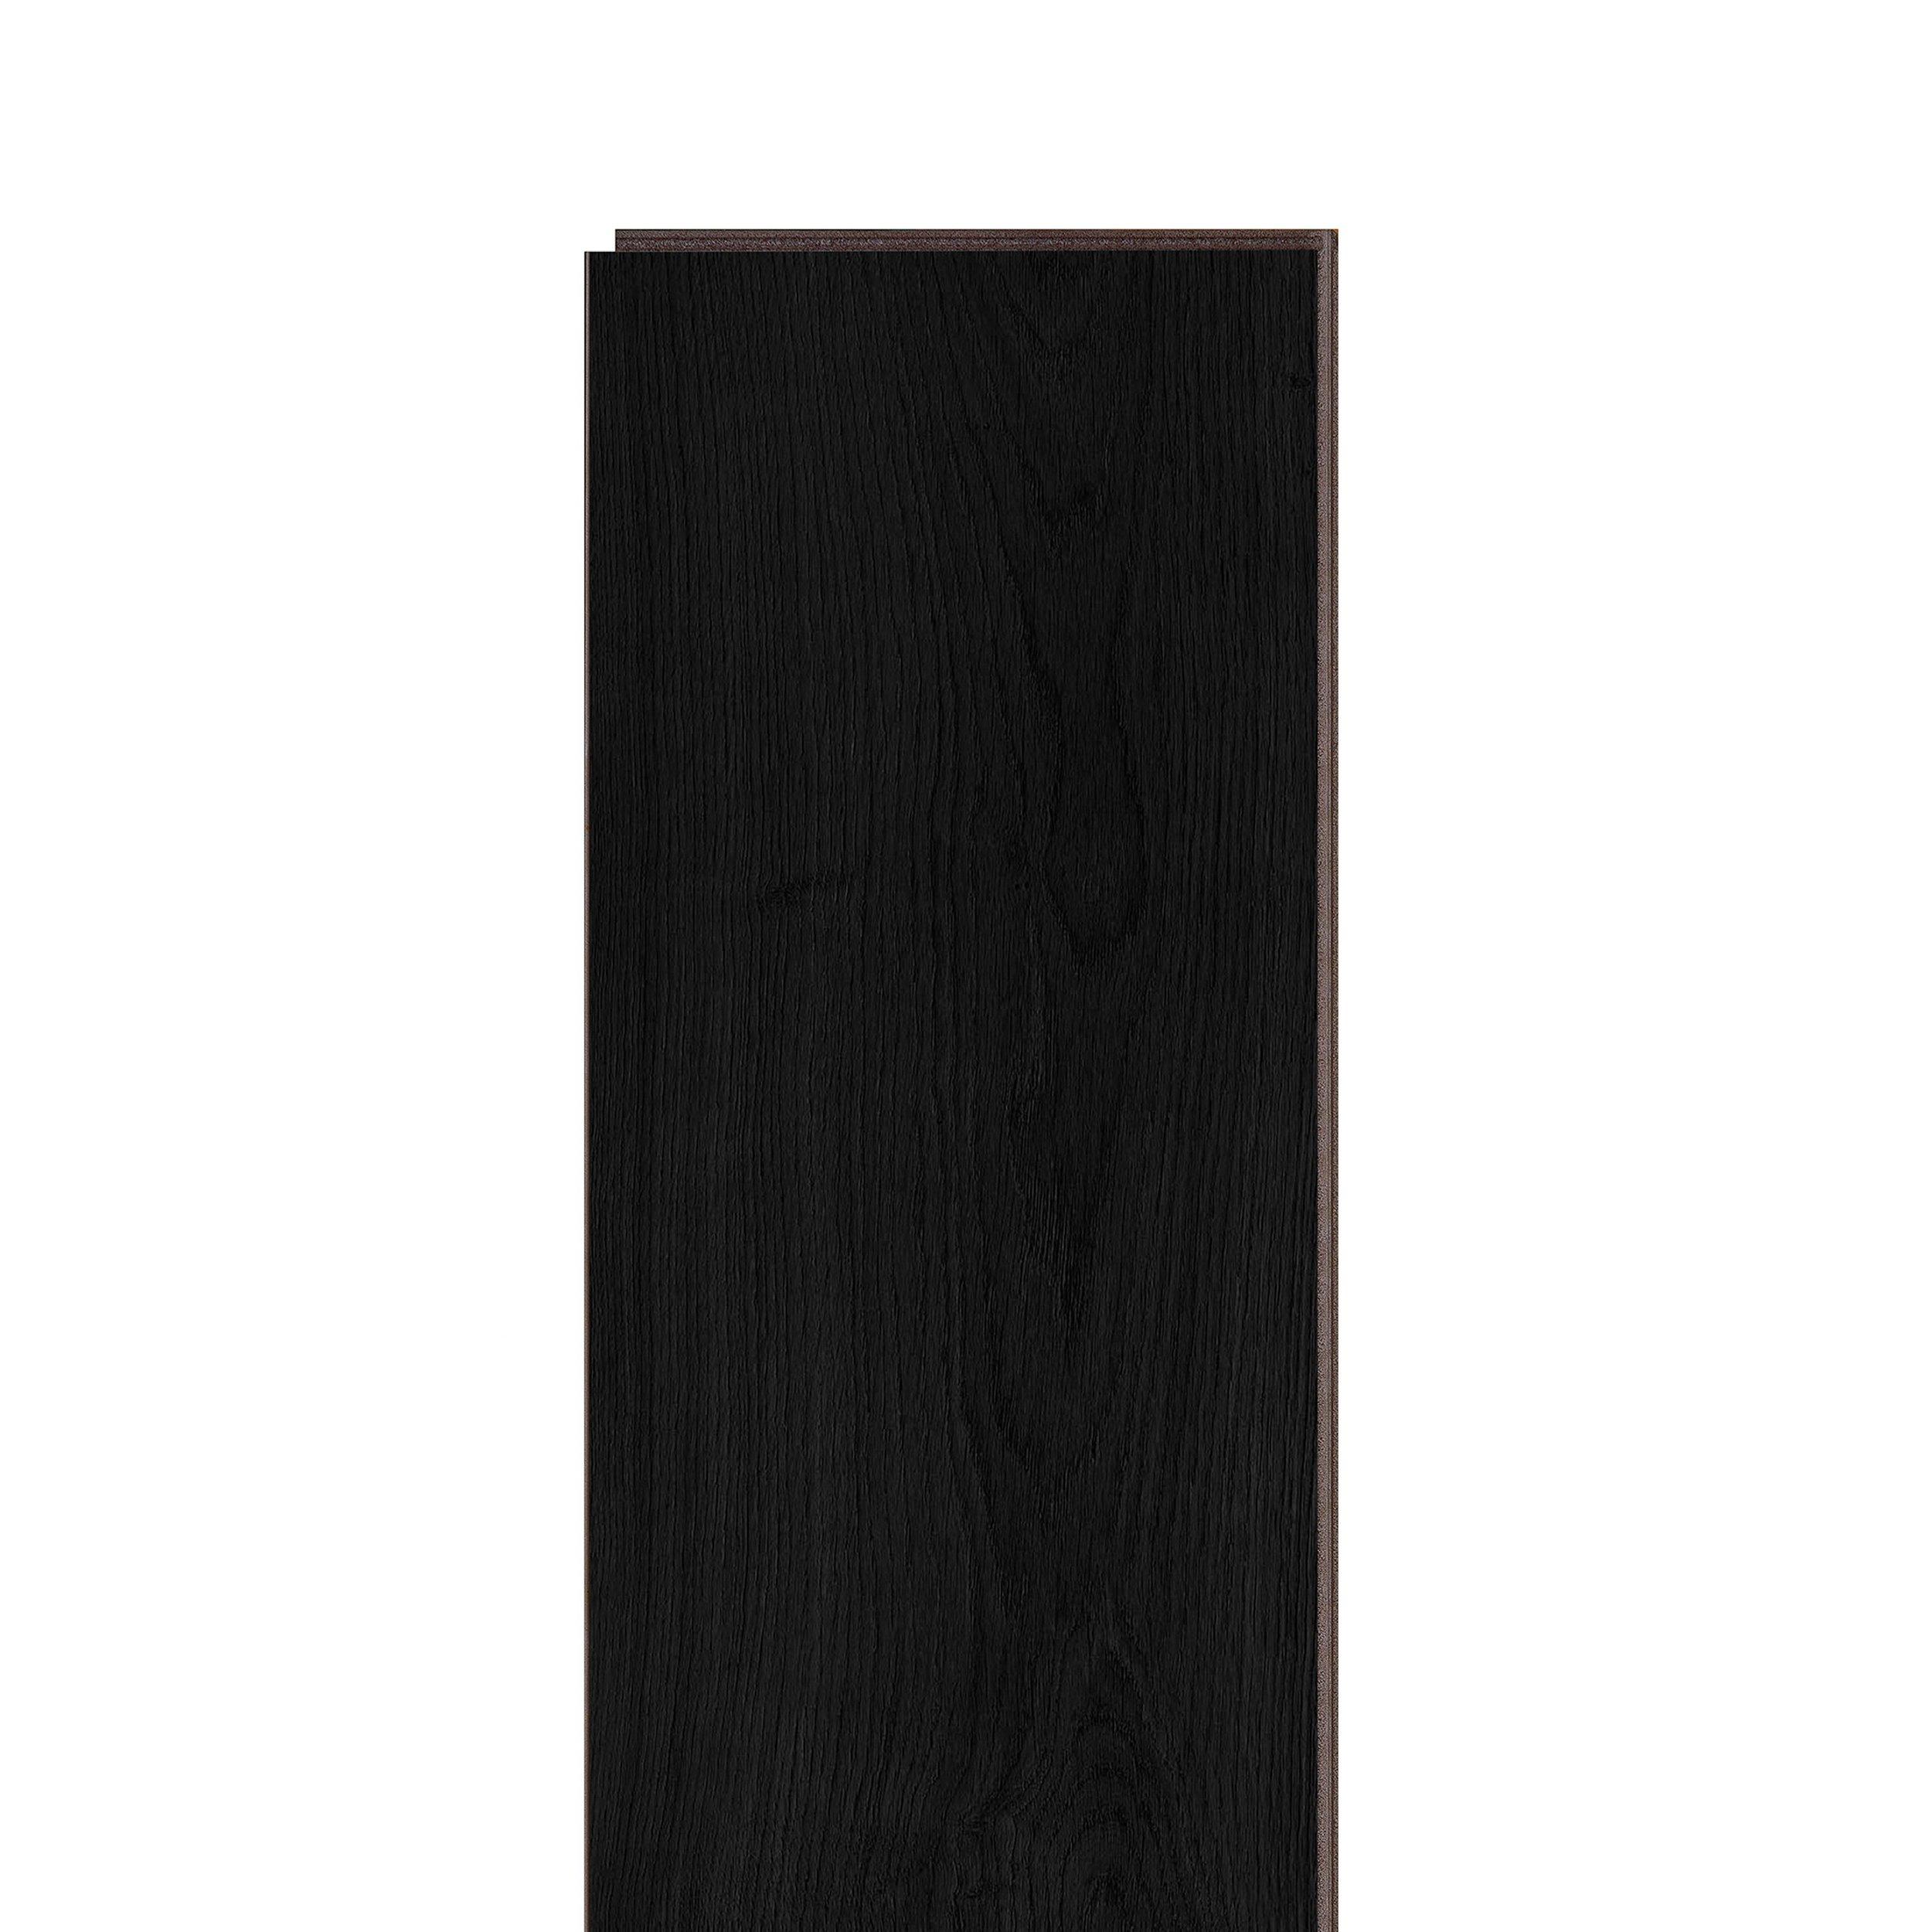 Delphia Rigid Core Luxury Vinyl Plank - Cork Back